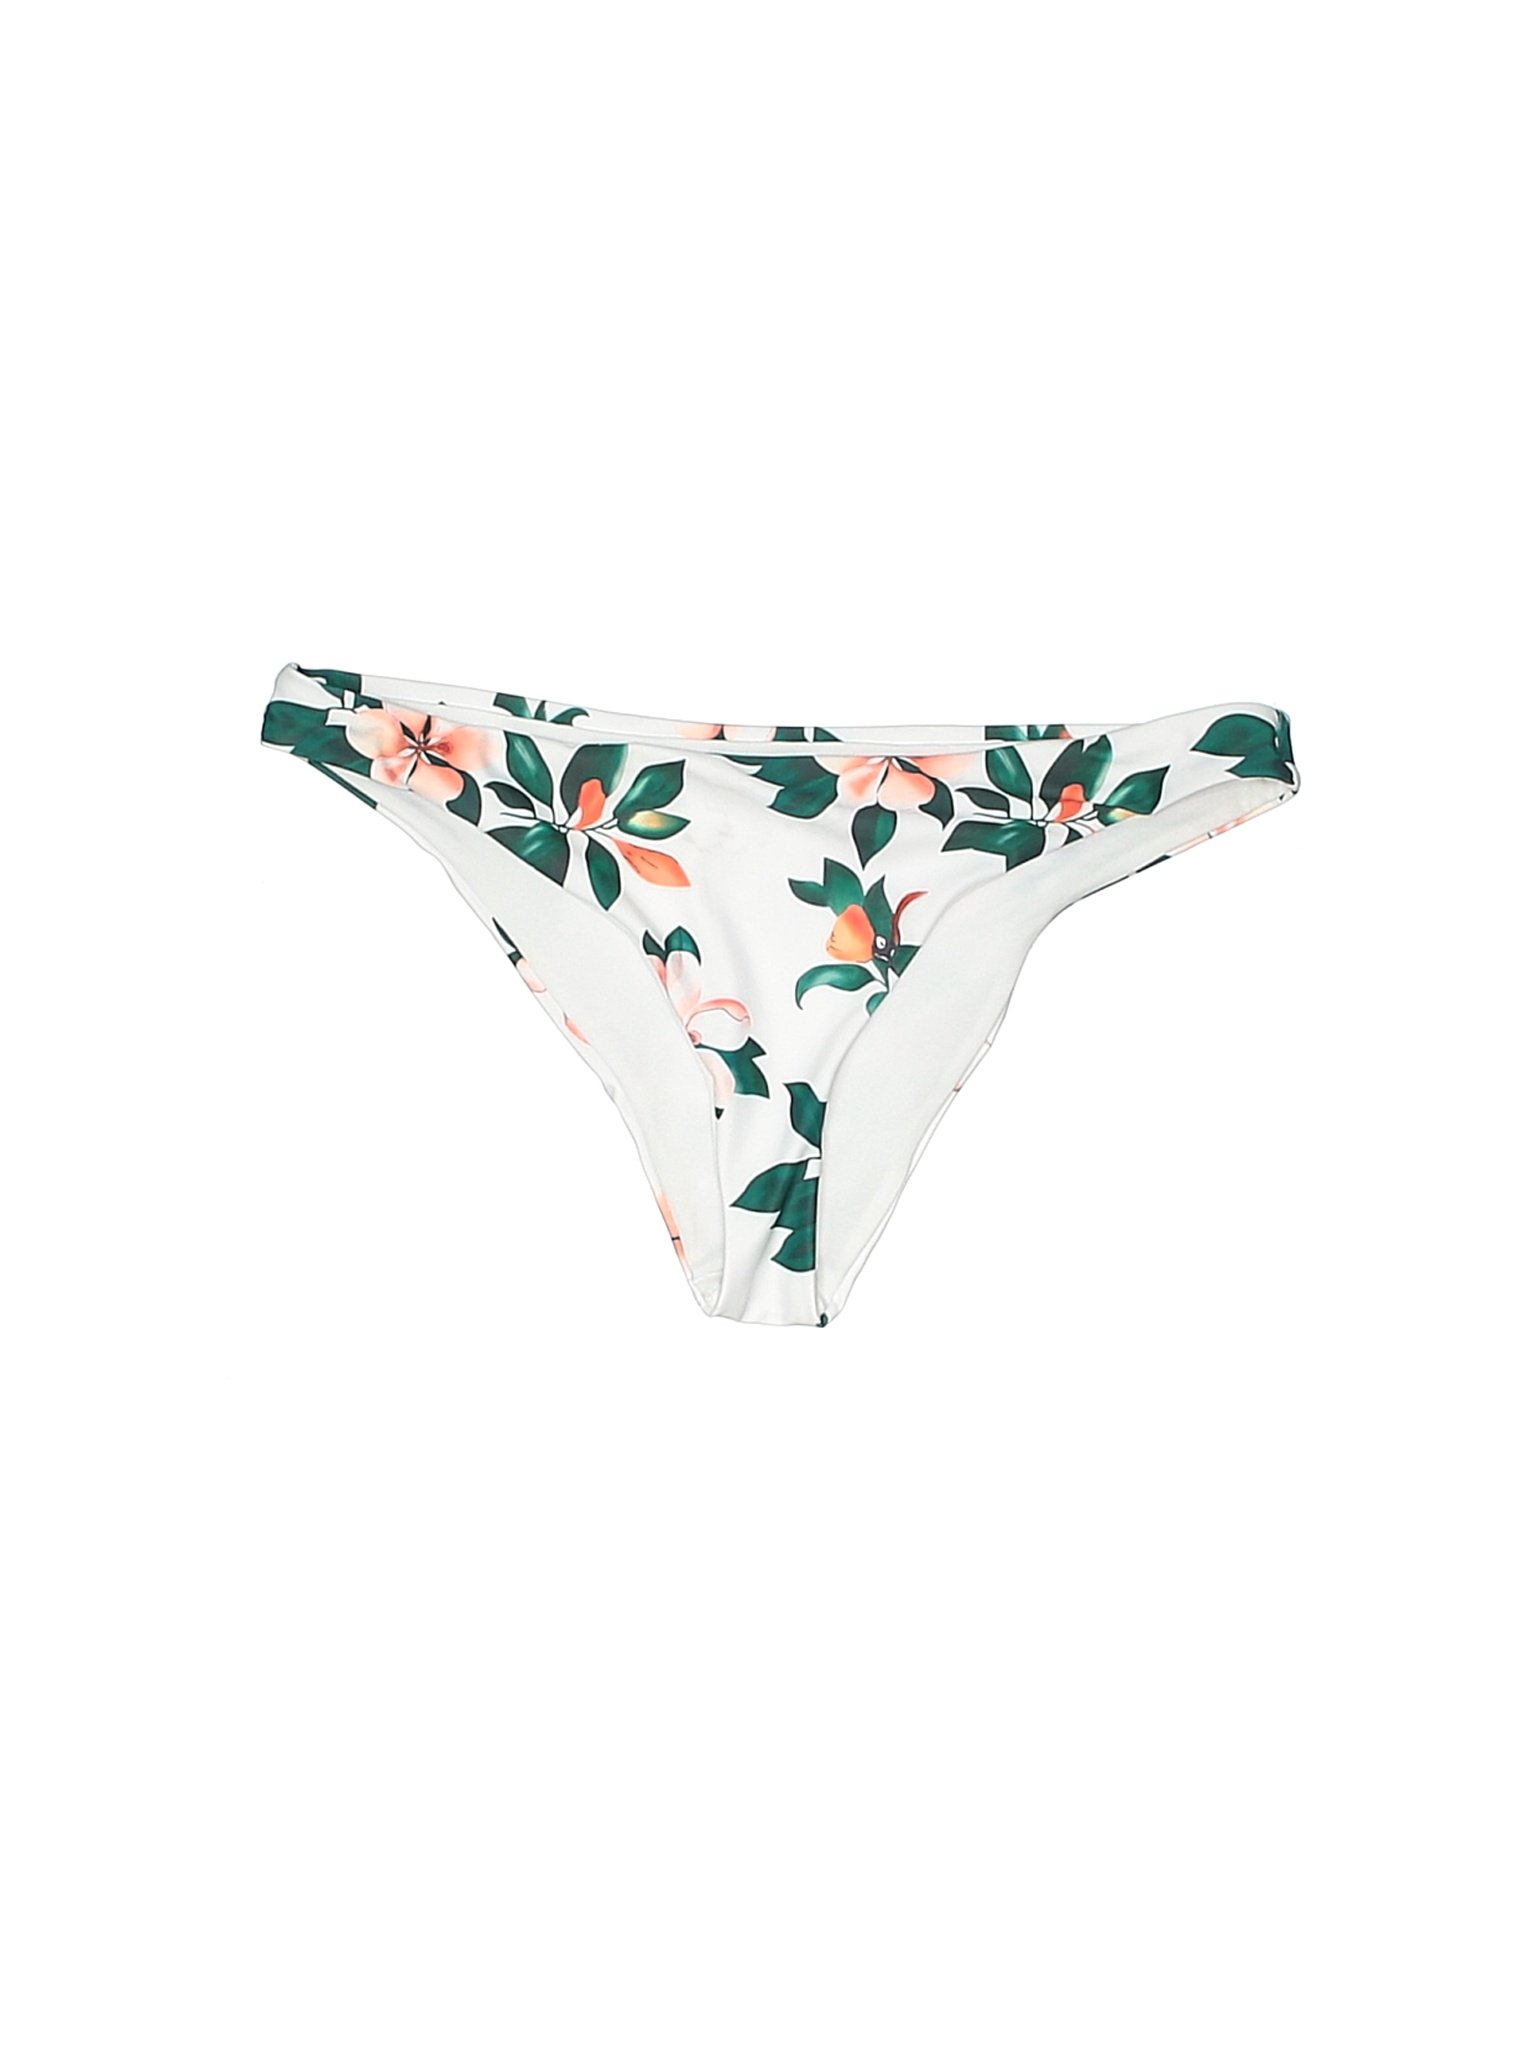 Unbranded Women White Swimsuit Bottoms M | eBay